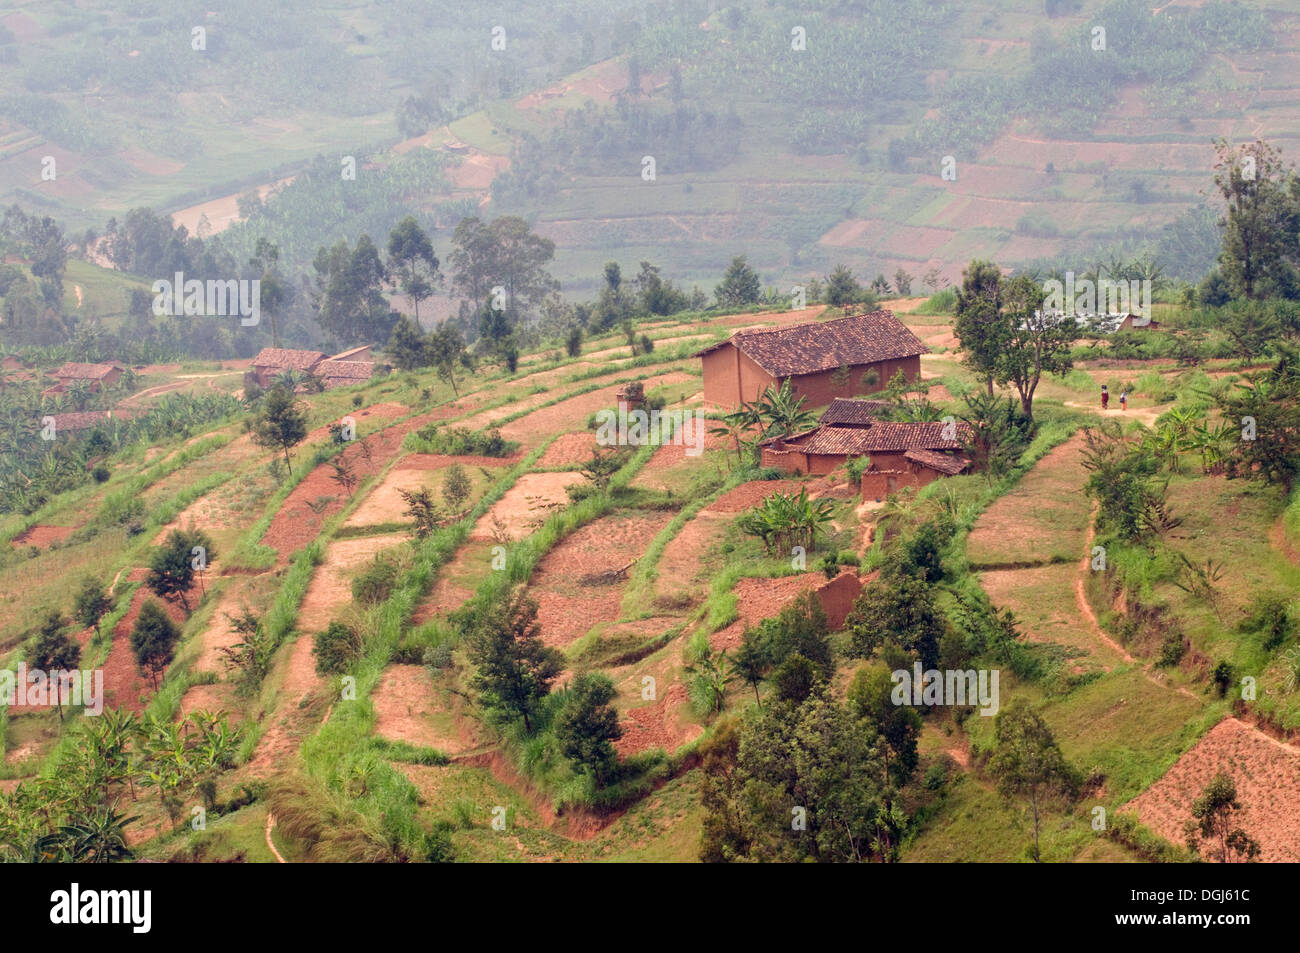 Visualizzare fertili terrazze cascina in Ruanda centrale tra Kigali e Ruhengiri vicino le montagne Virunga la terra delle mille colline Foto Stock